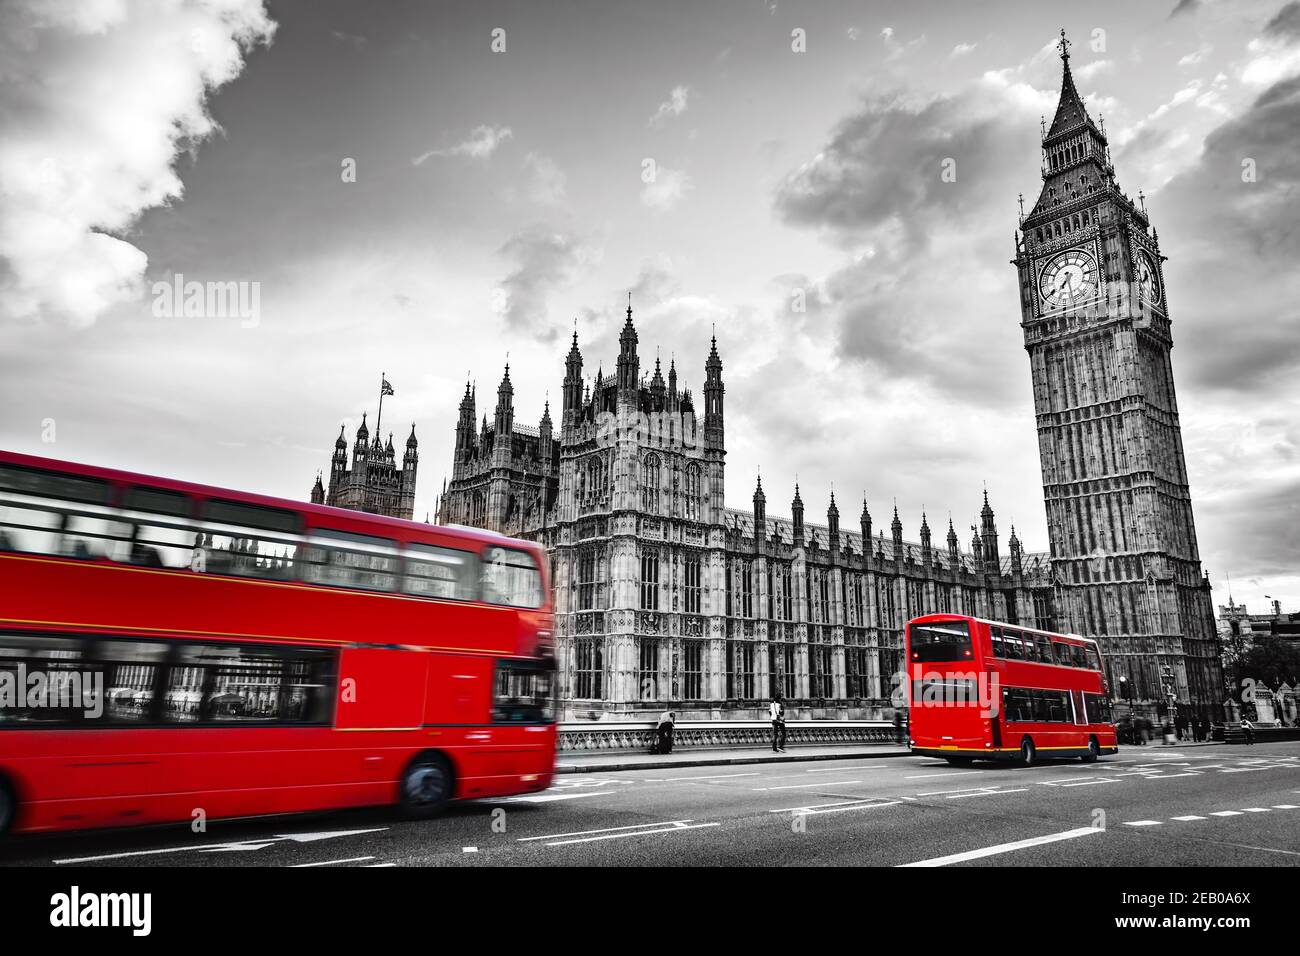 Londra, il Regno Unito. Autobus rossi in movimento e Big ben, il Palazzo di Westminster. Le icone dell'Inghilterra in stile vintage, retrò. Rosso in bianco e nero Foto Stock